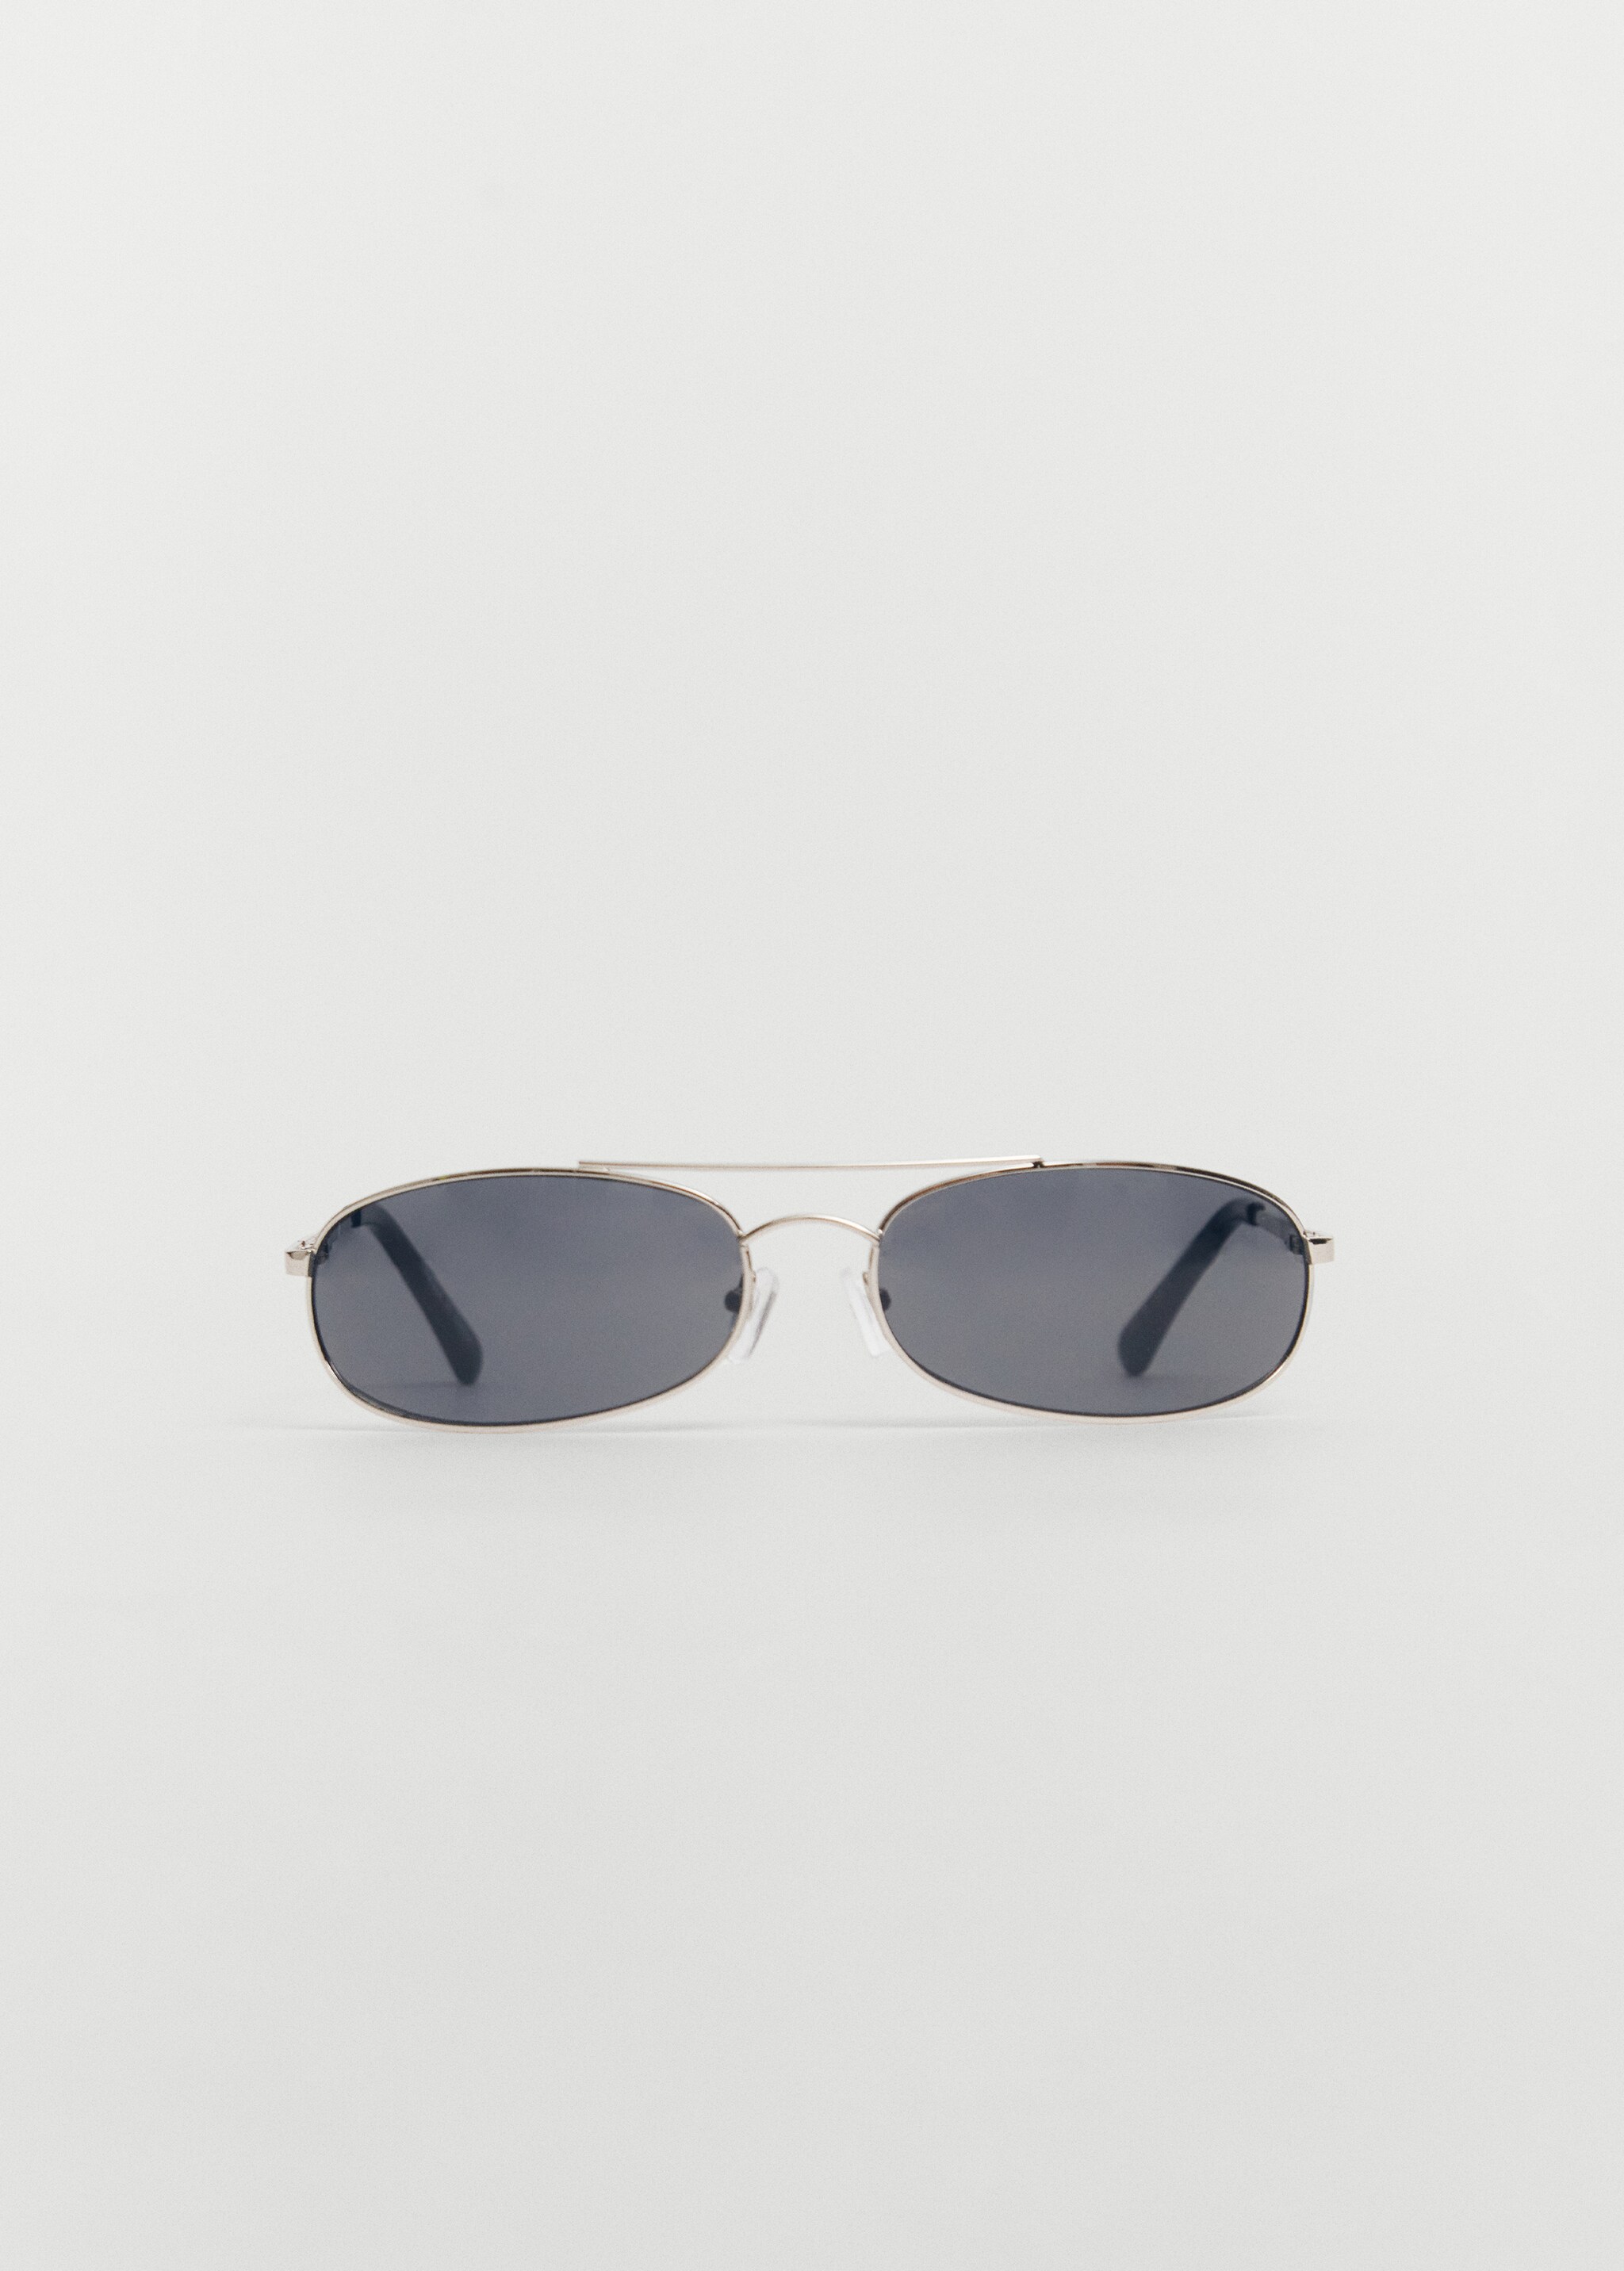 Óculos de sol com armação metálica - Artigo sem modelo